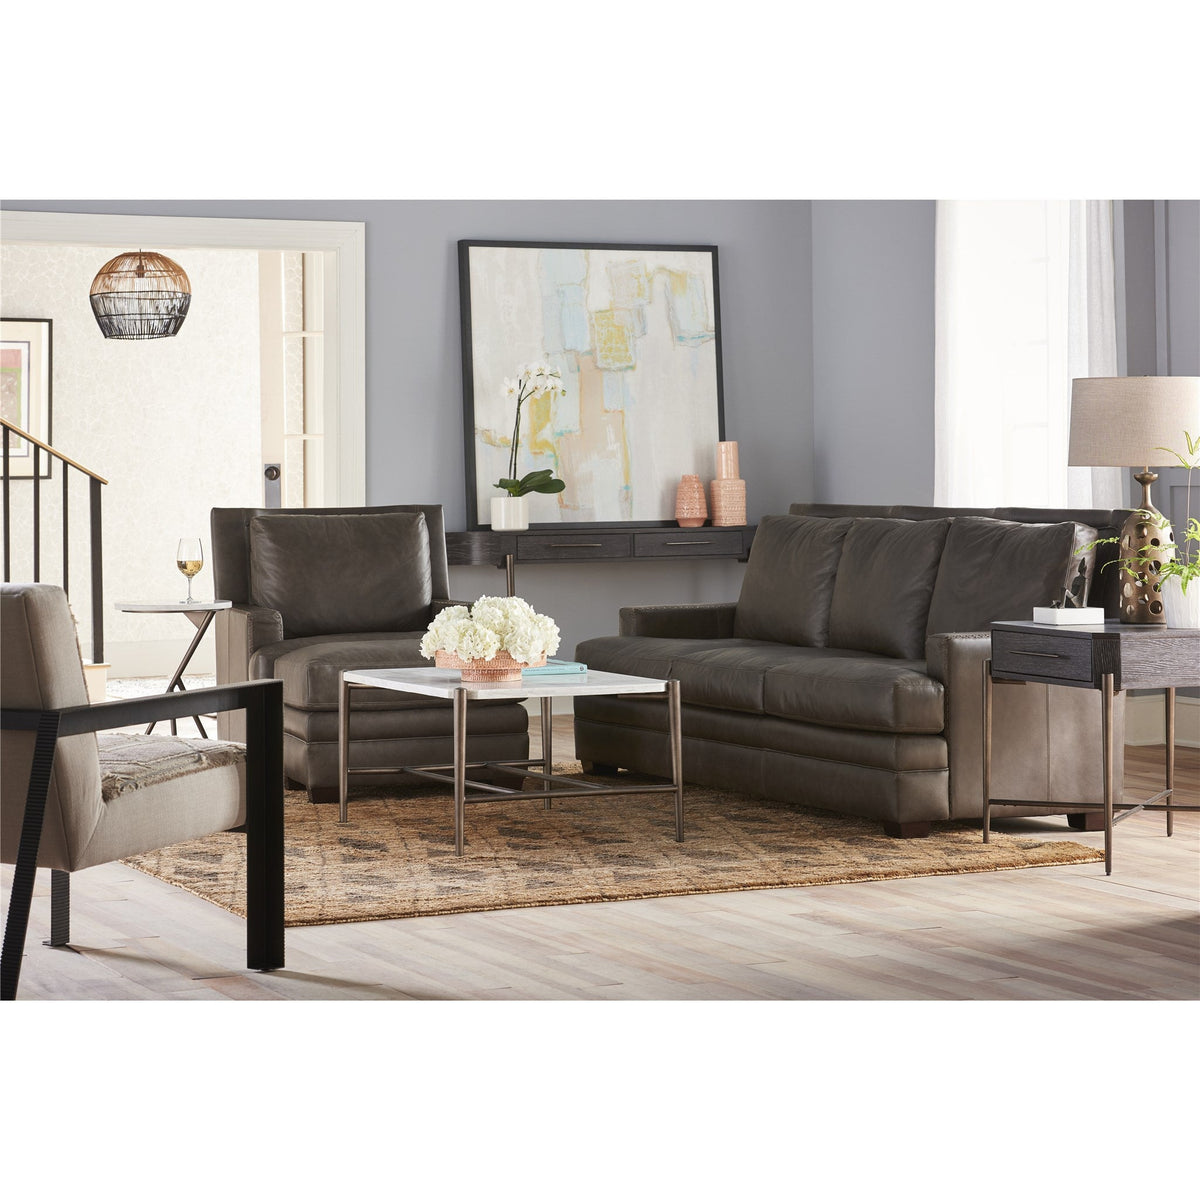 Kipling Sofa - Be Bold Furniture